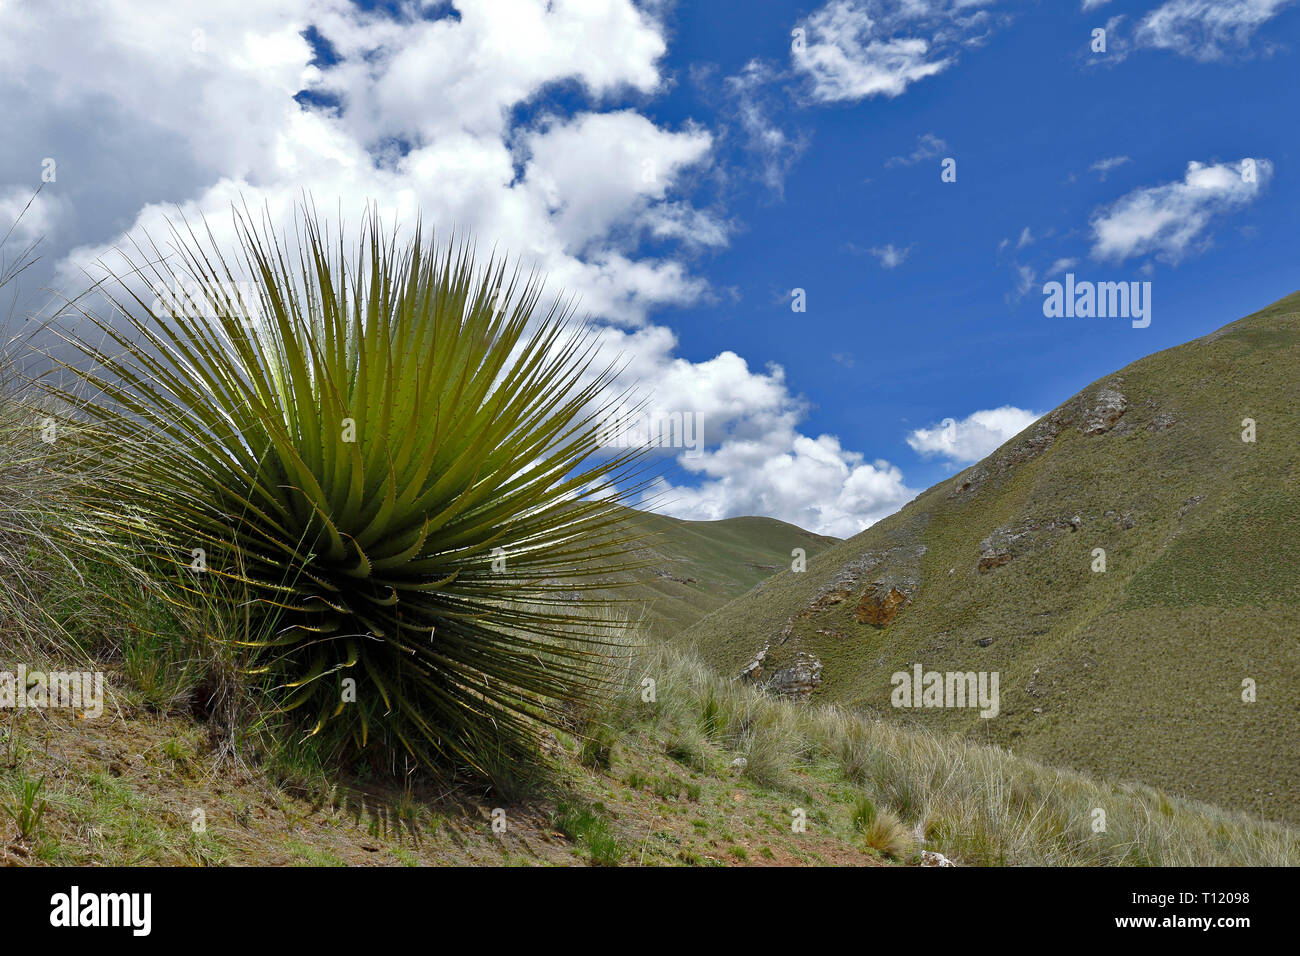 Splendido esemplare di Titanca (Puya raimondii) una specie di flora endemica della regione andina del Perù e Bolivia; In questo caso, un dettaglio del piano Foto Stock